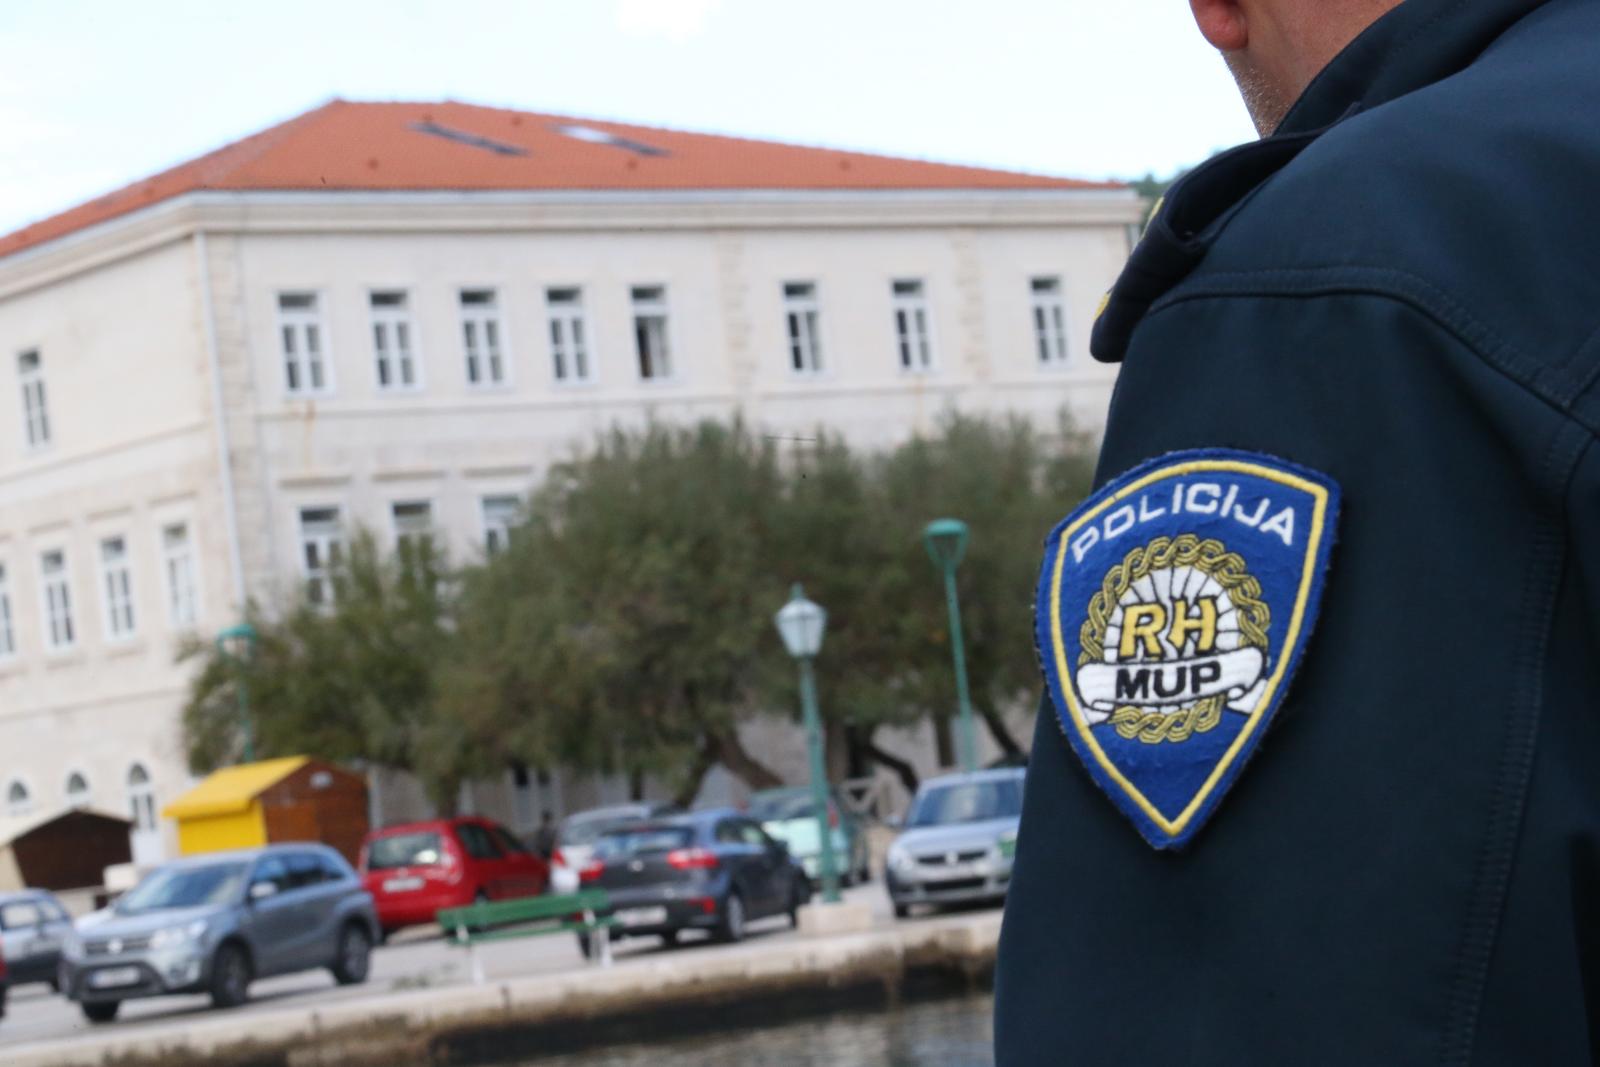 05.11.2018., Pucisca, otok Brac - Ilustracija policije nedaleko zgrade osnovne skole."nPhoto: Ivo Cagalj/PIXSELL